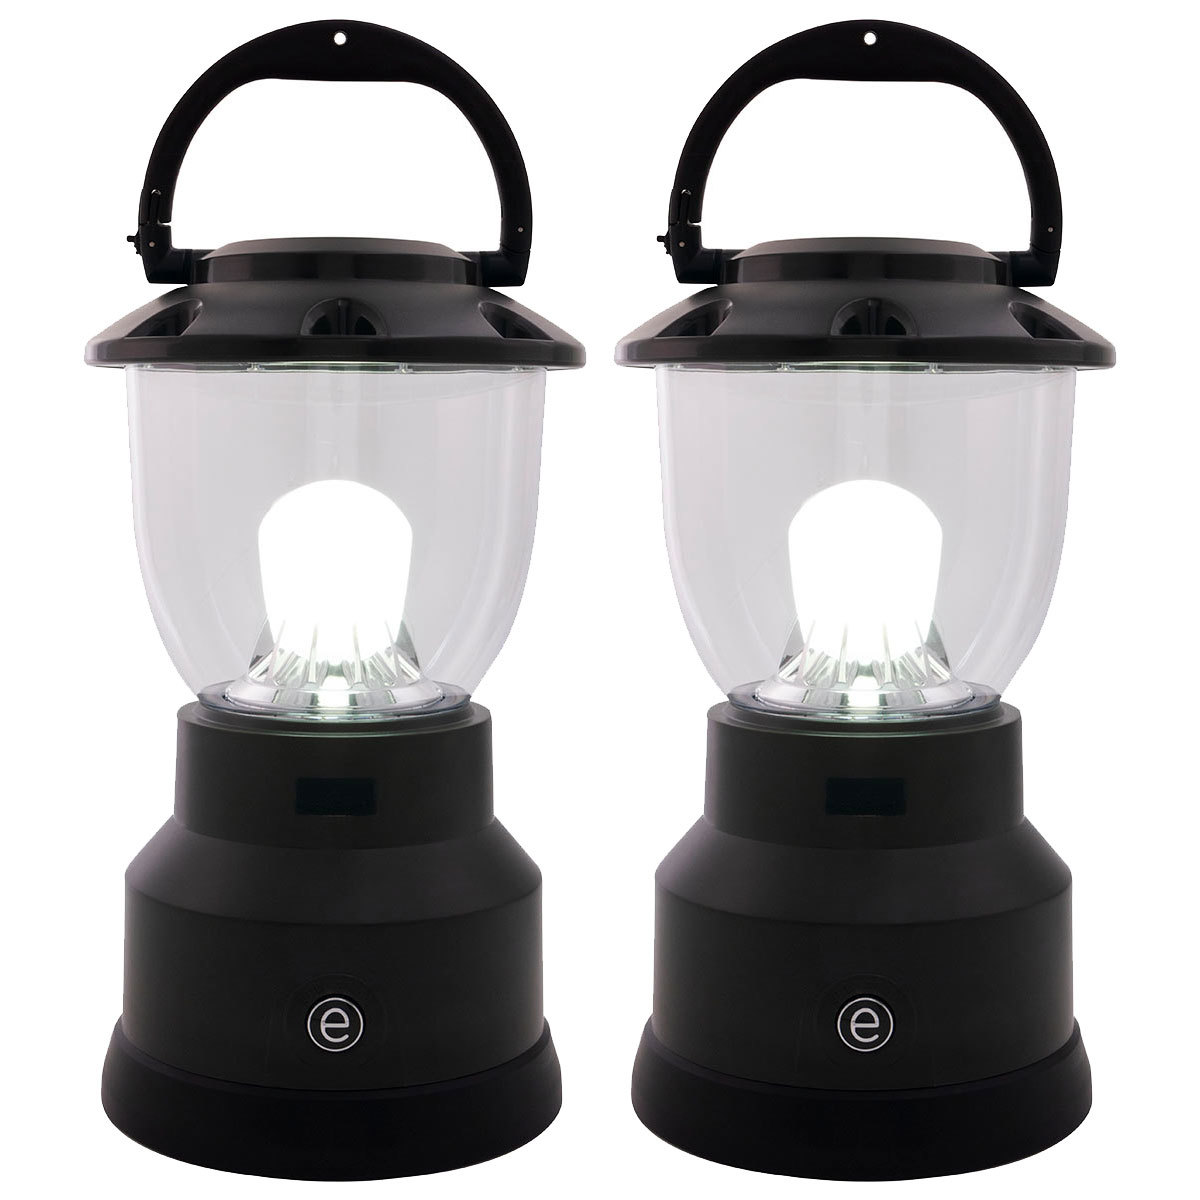 Jasco LED Enbrighten Lantern with USB Port